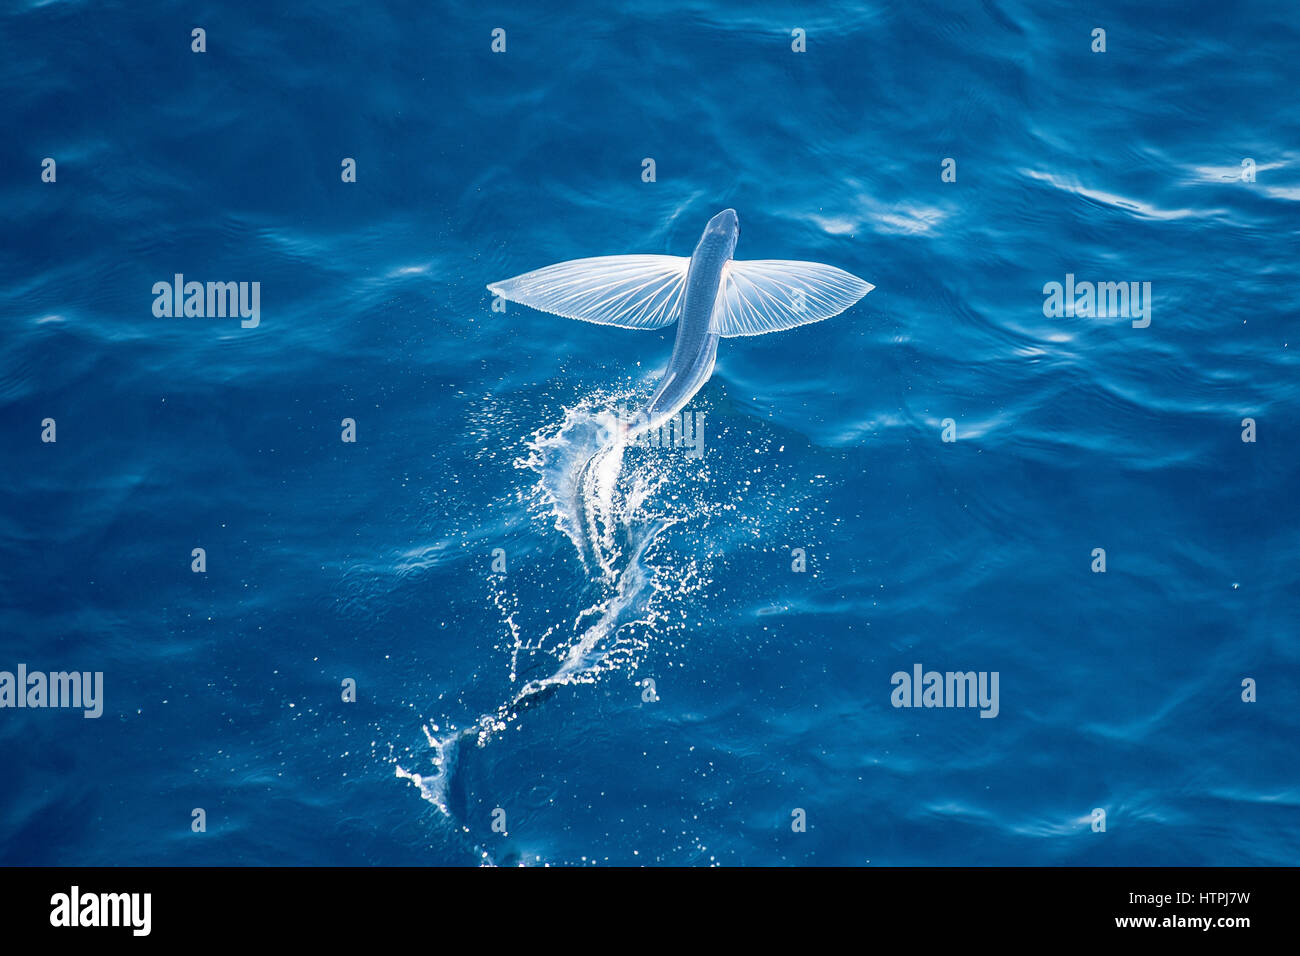 Les espèces de poissons volants dans les airs, nom scientifique inconnu, plusieurs centaines de milles au large de la Mauritanie, l'Afrique du Nord, l'océan Atlantique. Banque D'Images